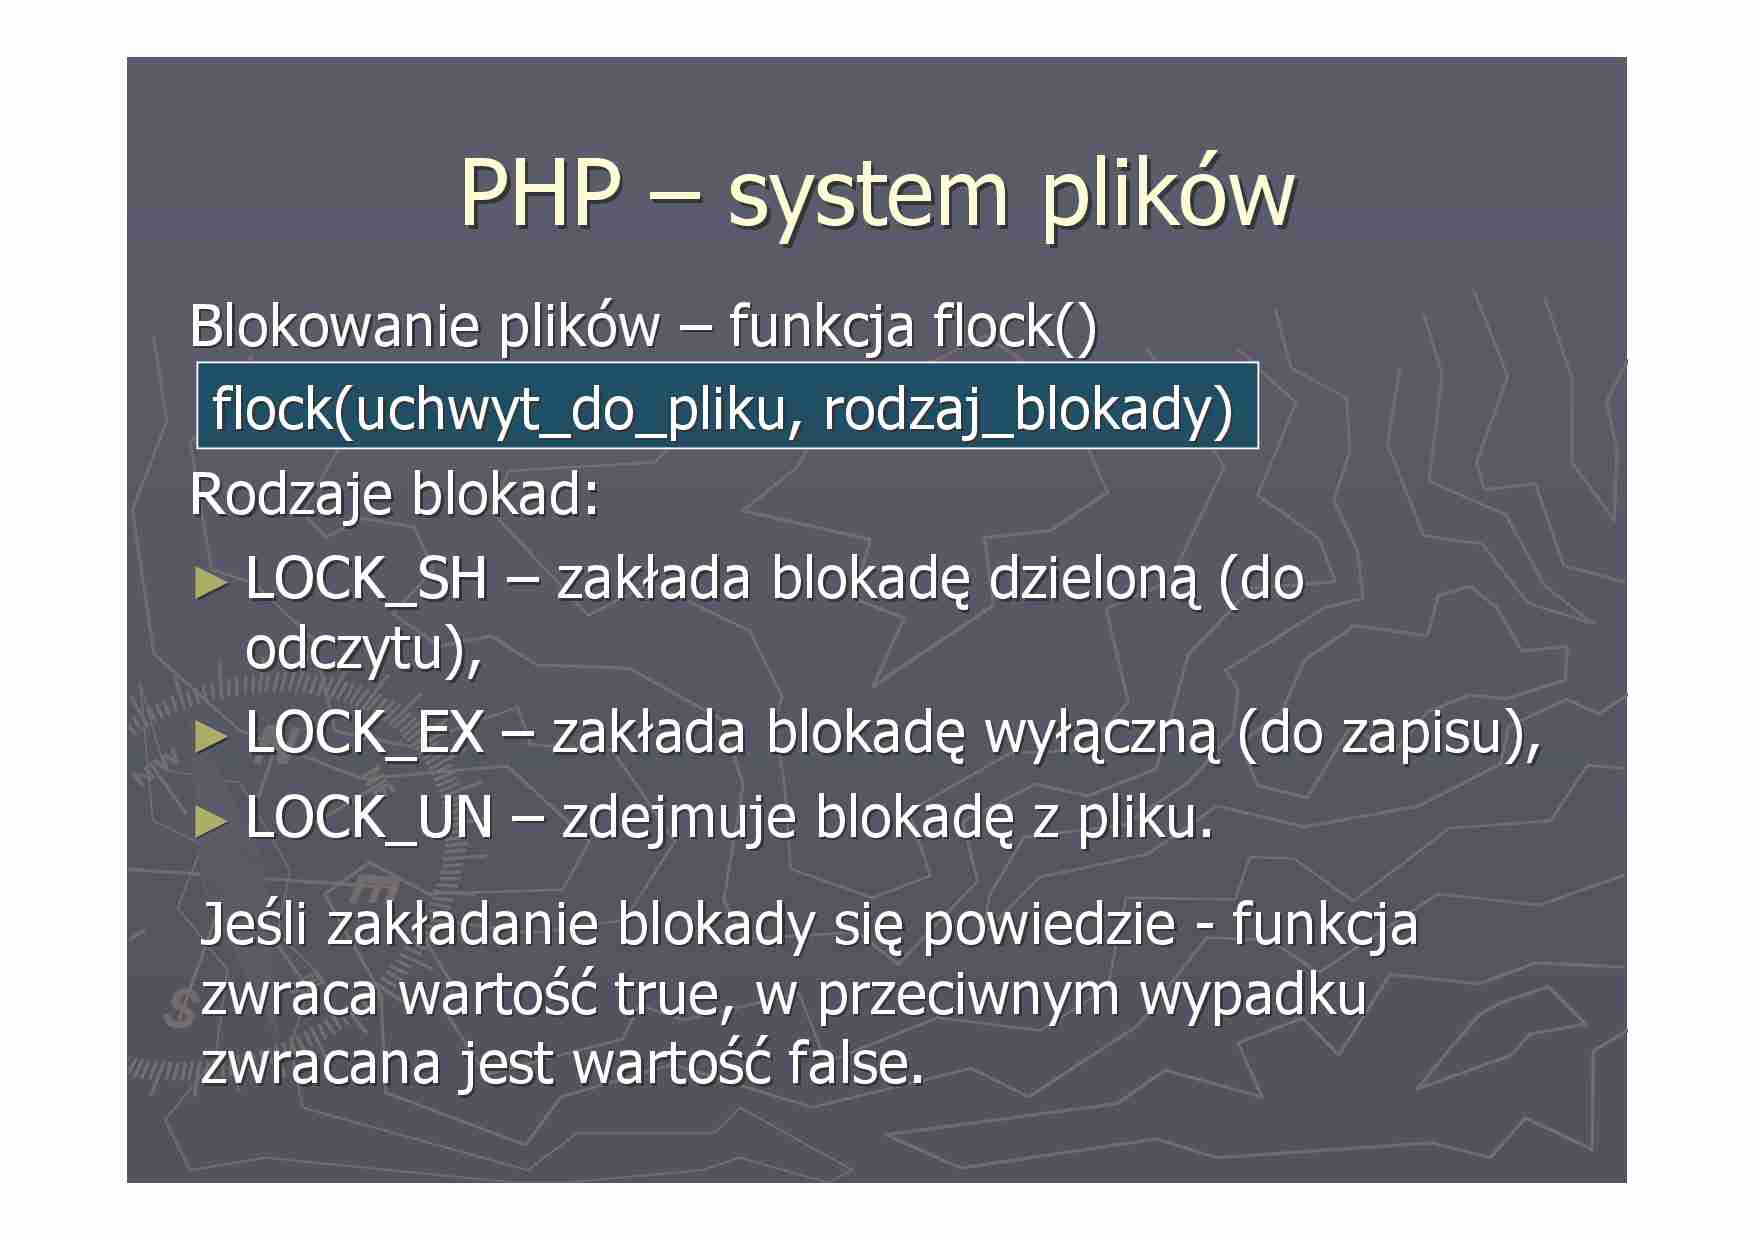 PHP - prezentacja cz. 2 - strona 1